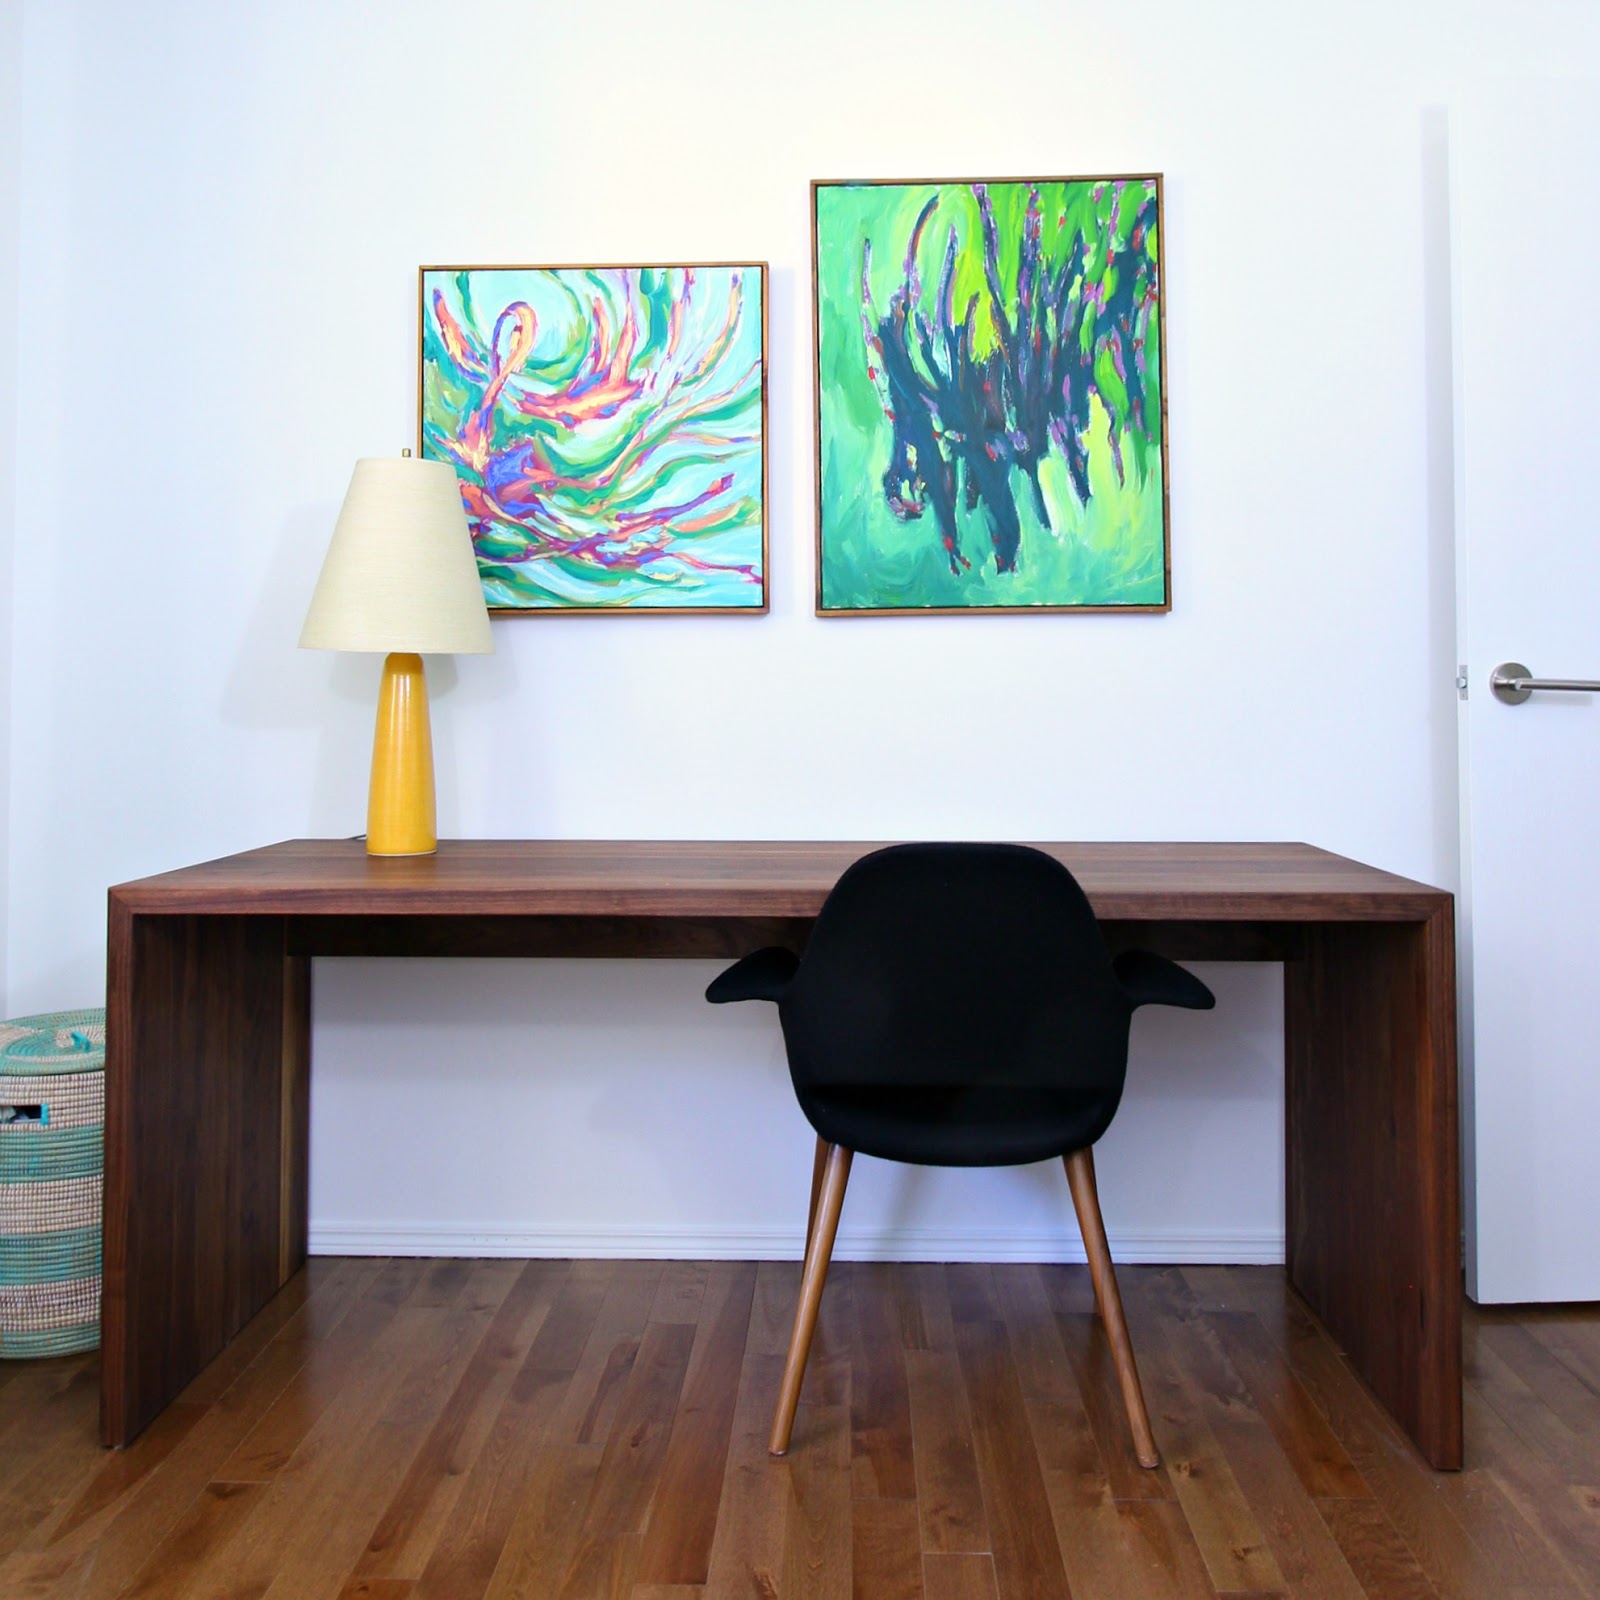 DIY Solid Walnut Desk Tutorial + Photos // www.danslelakehouse.com // @danslelakehouse